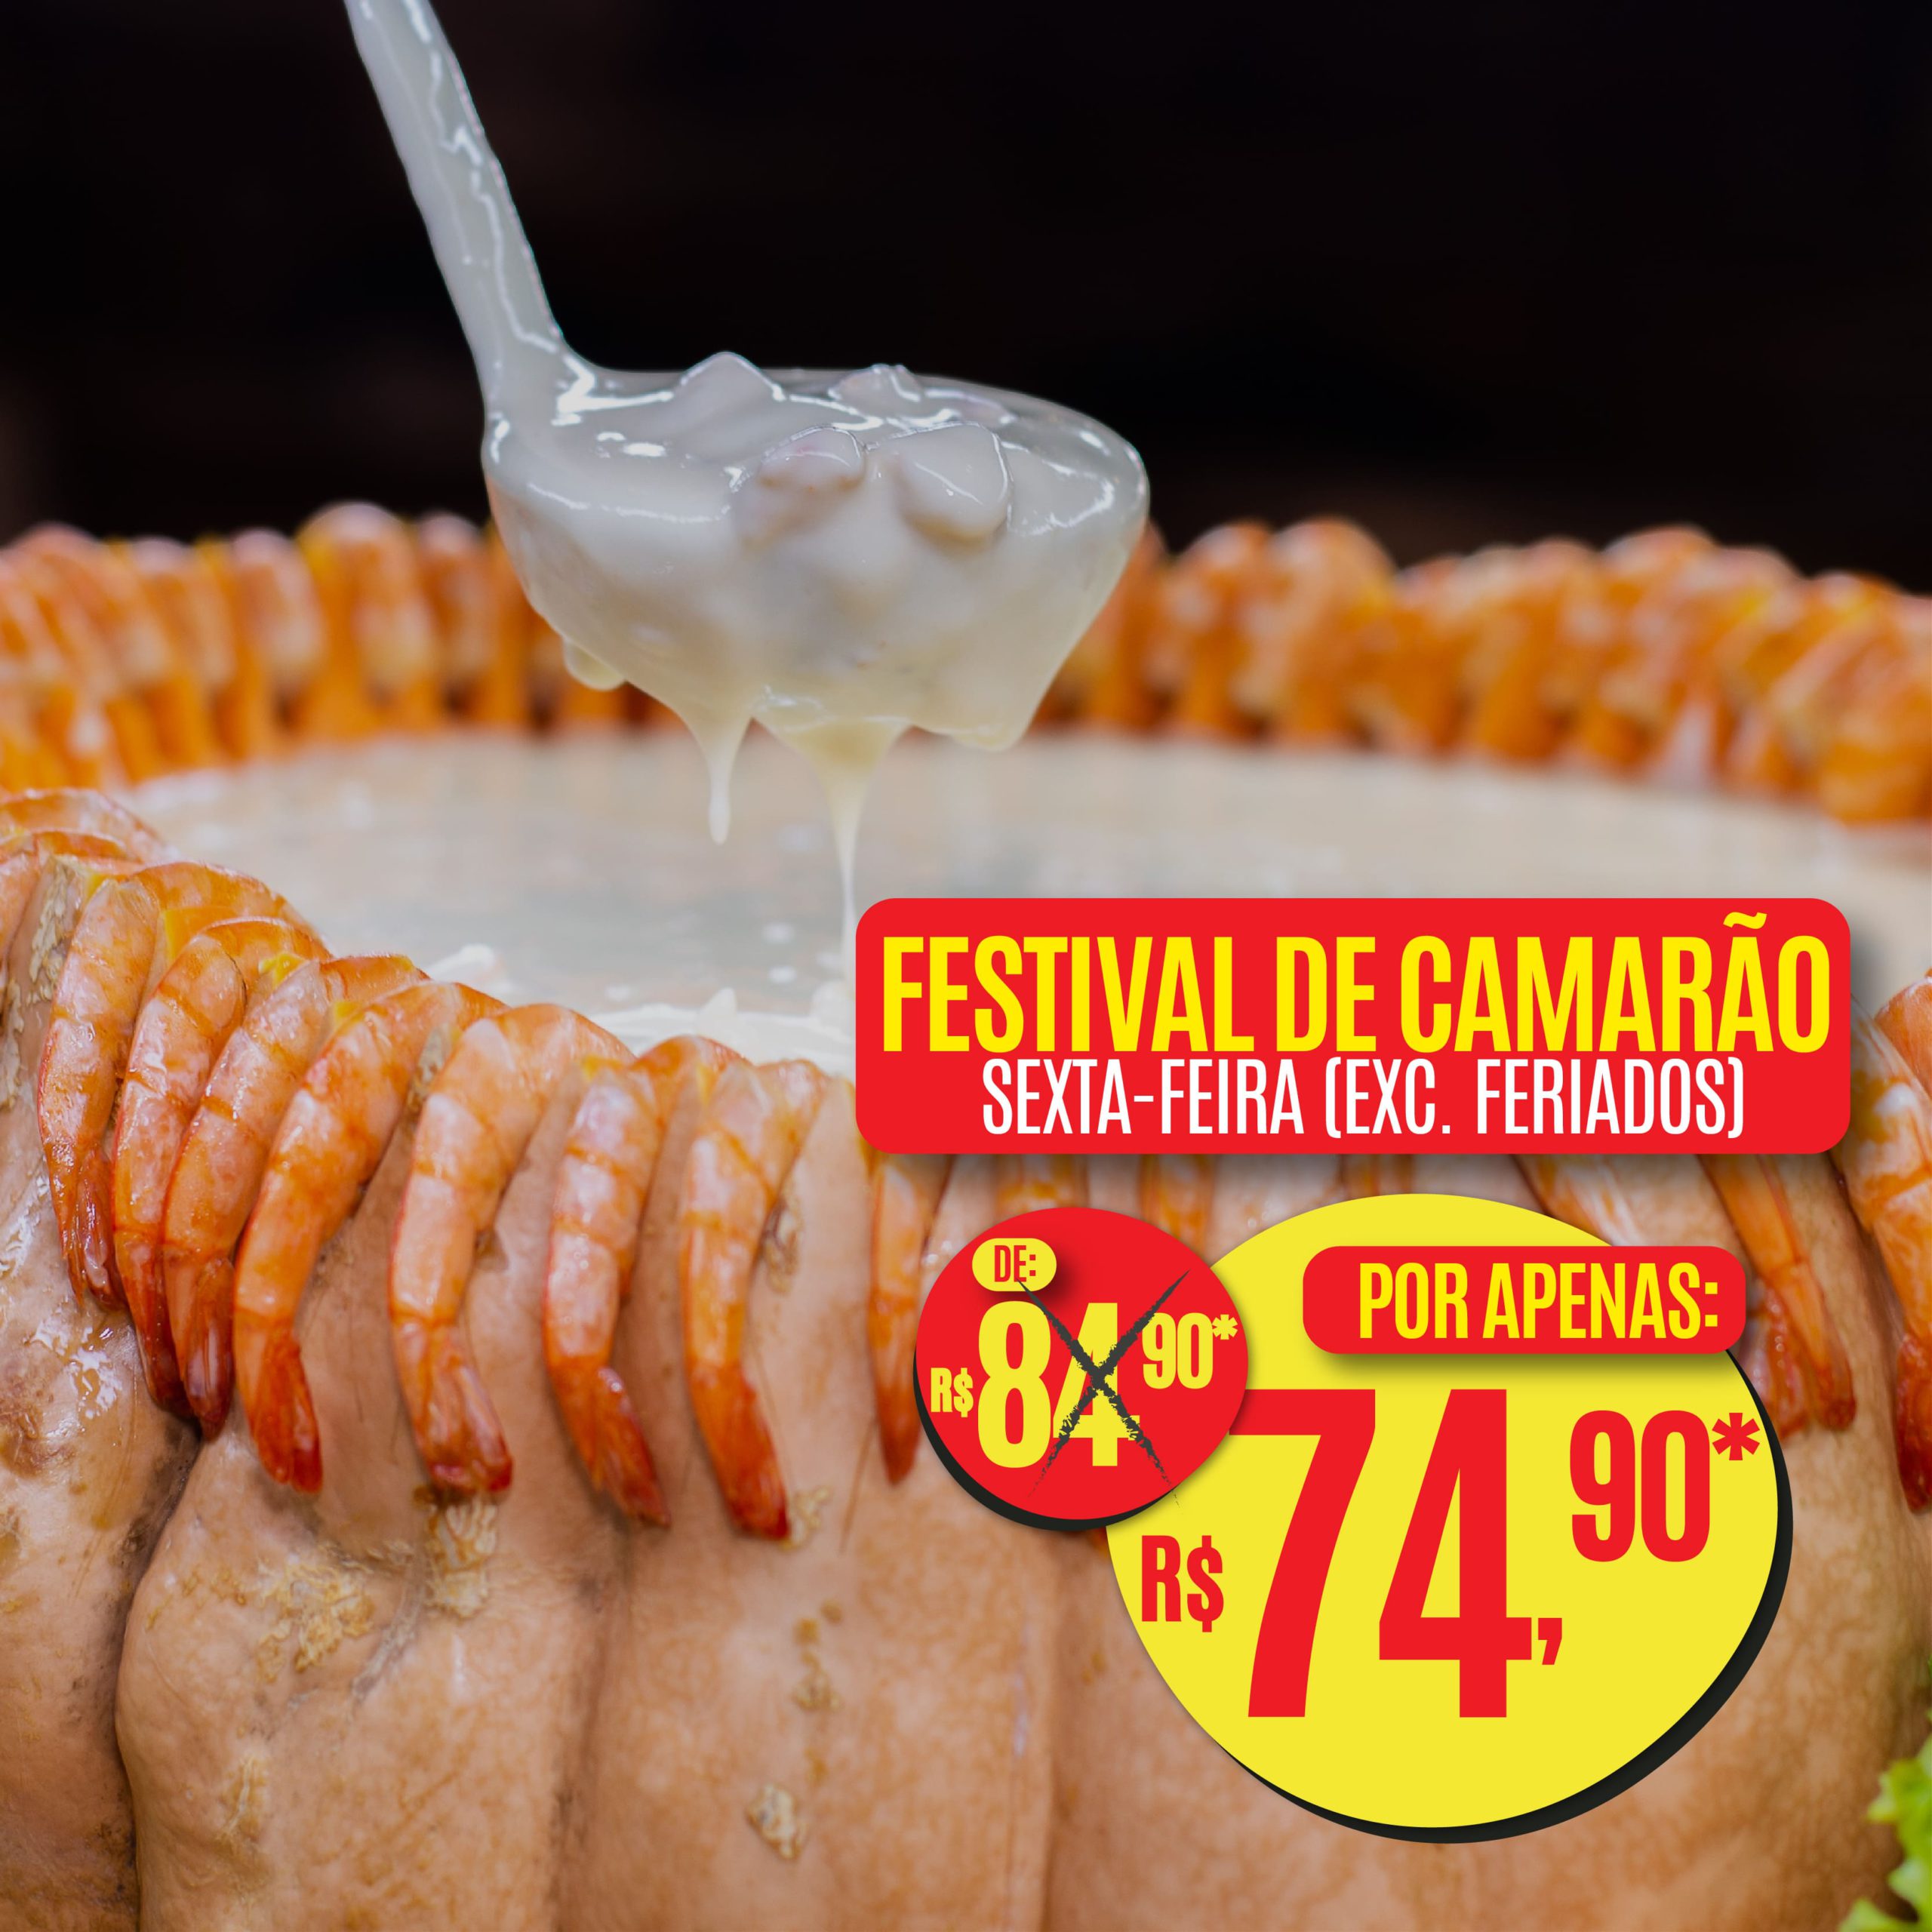 Festival de Camarão, Rodízio de Carnes e Comida Japonesa | Sexta-Feira (exc. feriados)